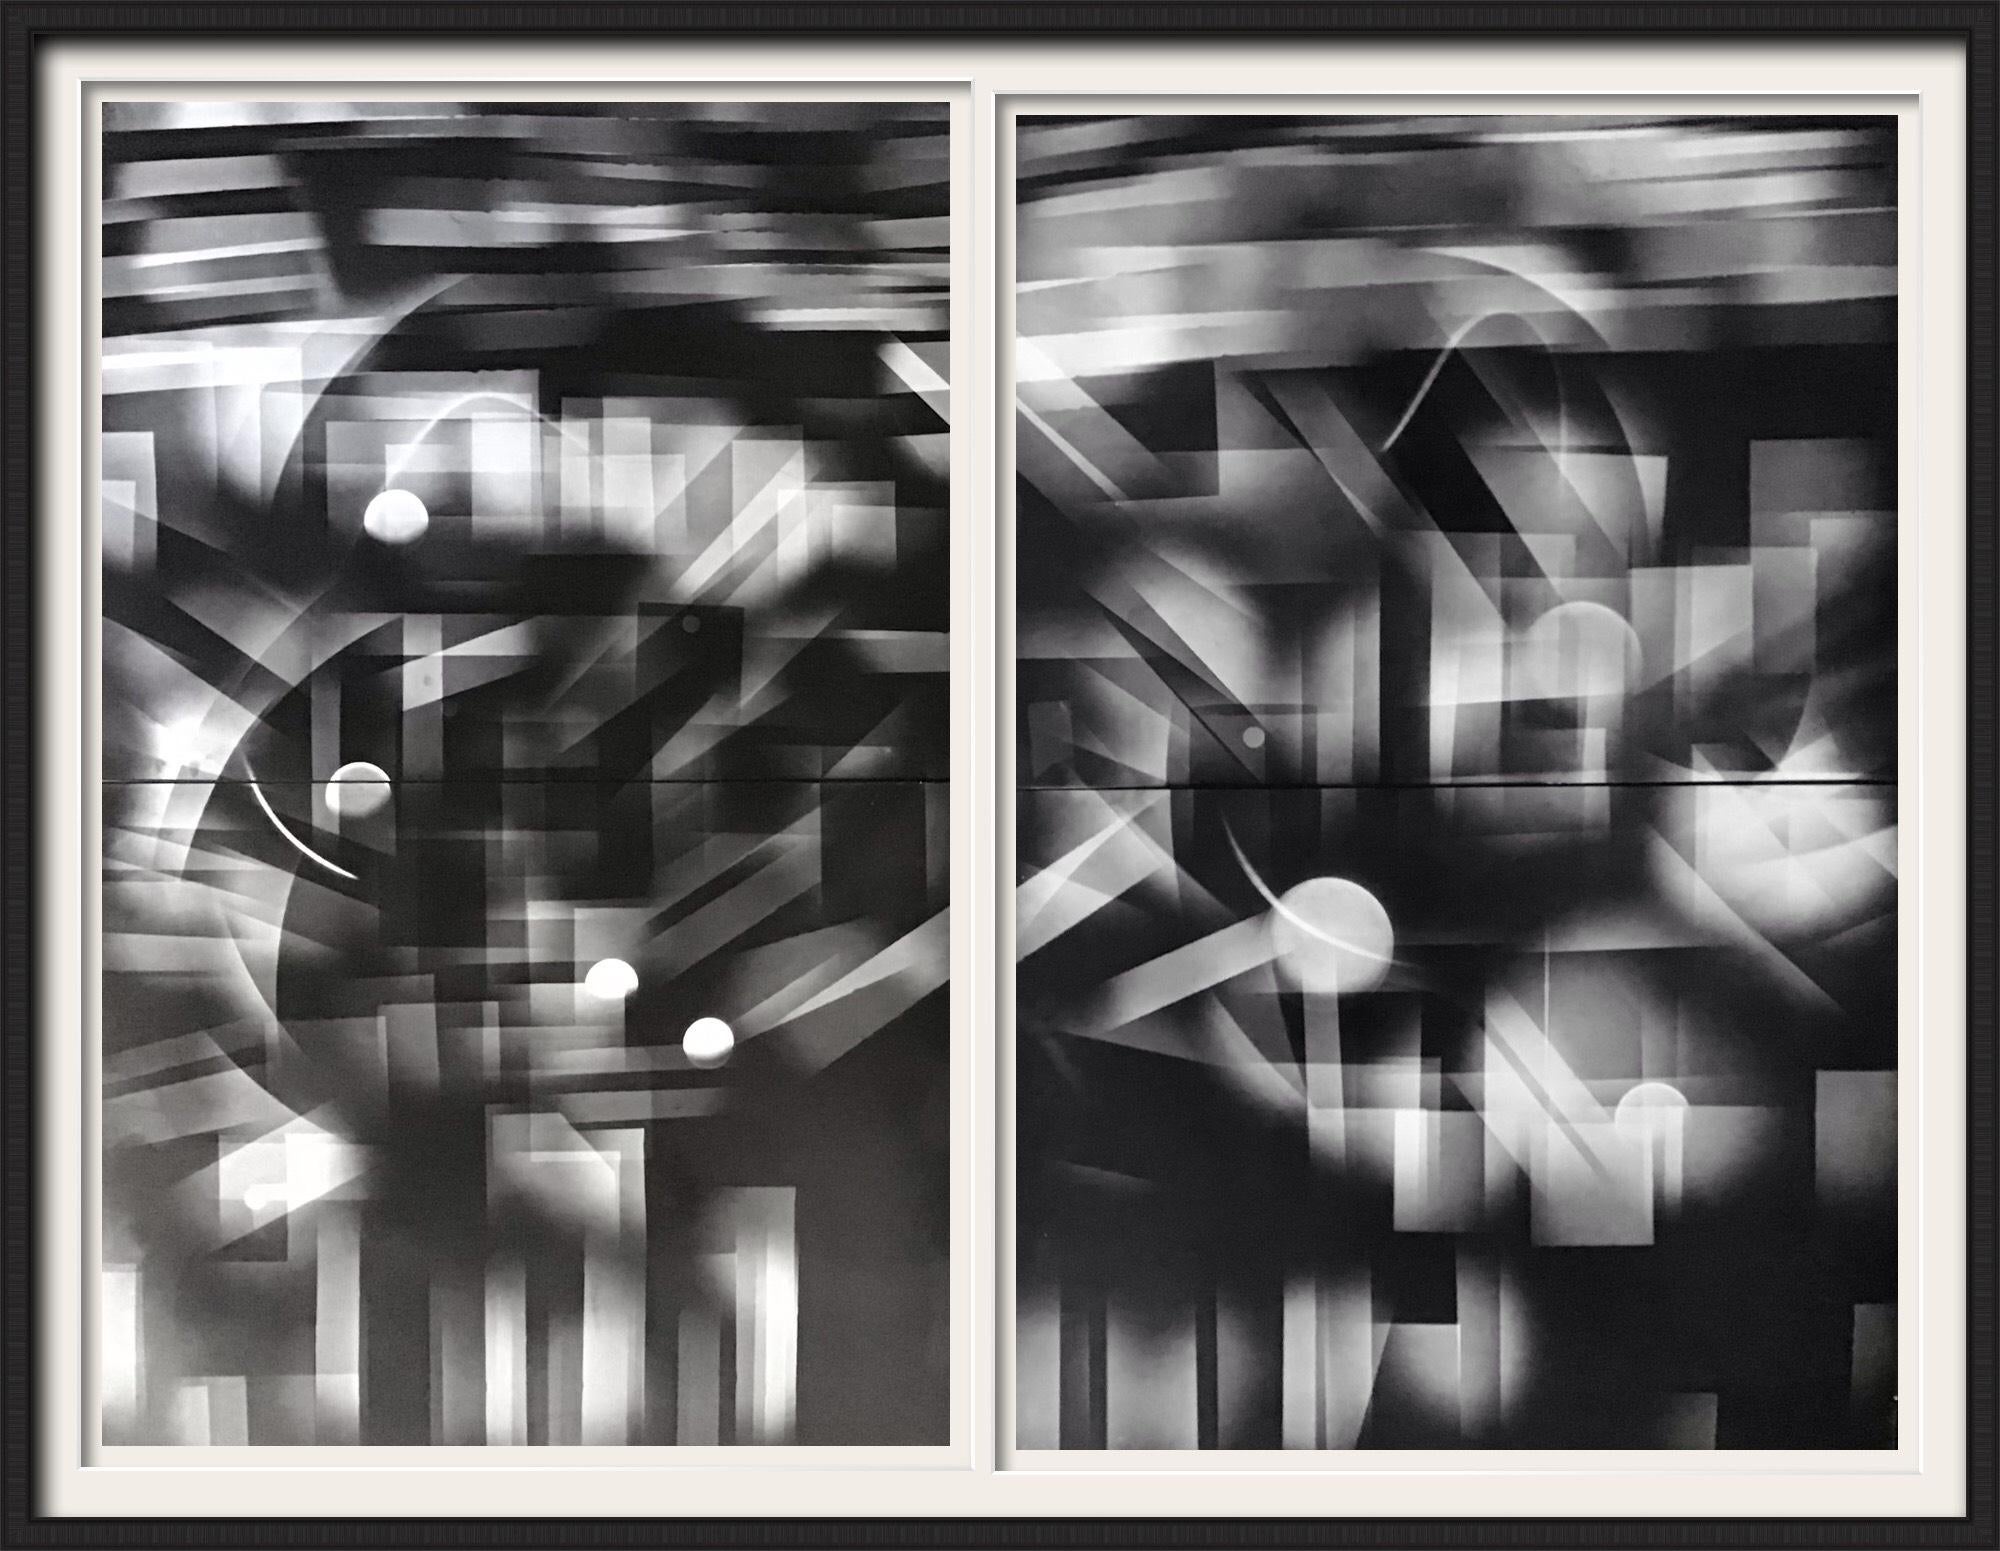 Impresión artística psicodélica abstracta en blanco y negro de la ciudad de Nueva York y el Hudson